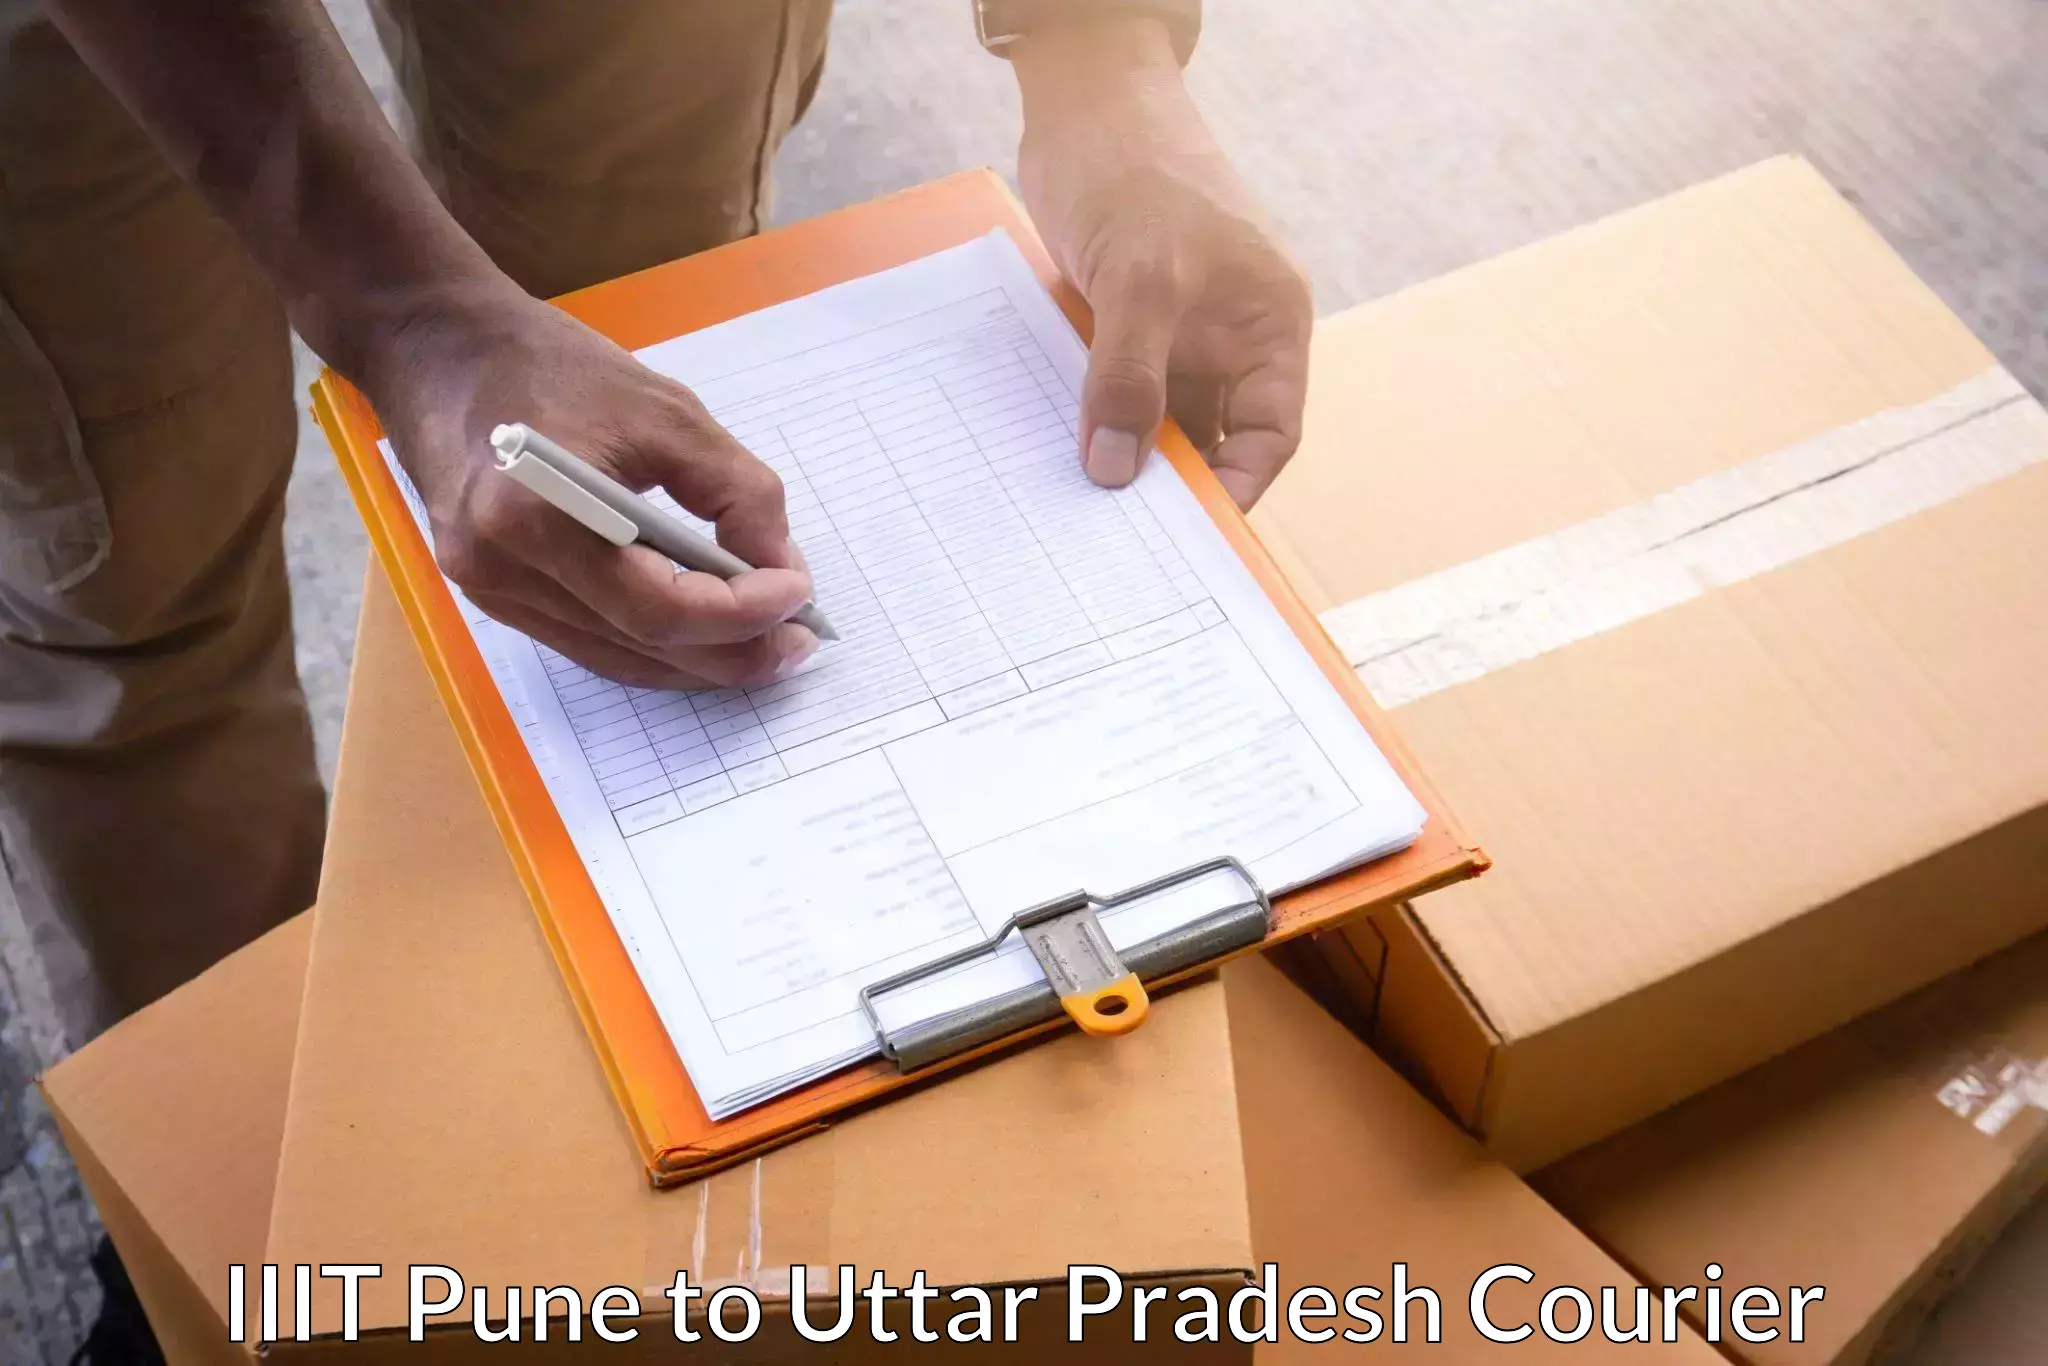 Delivery service partnership IIIT Pune to Renukoot